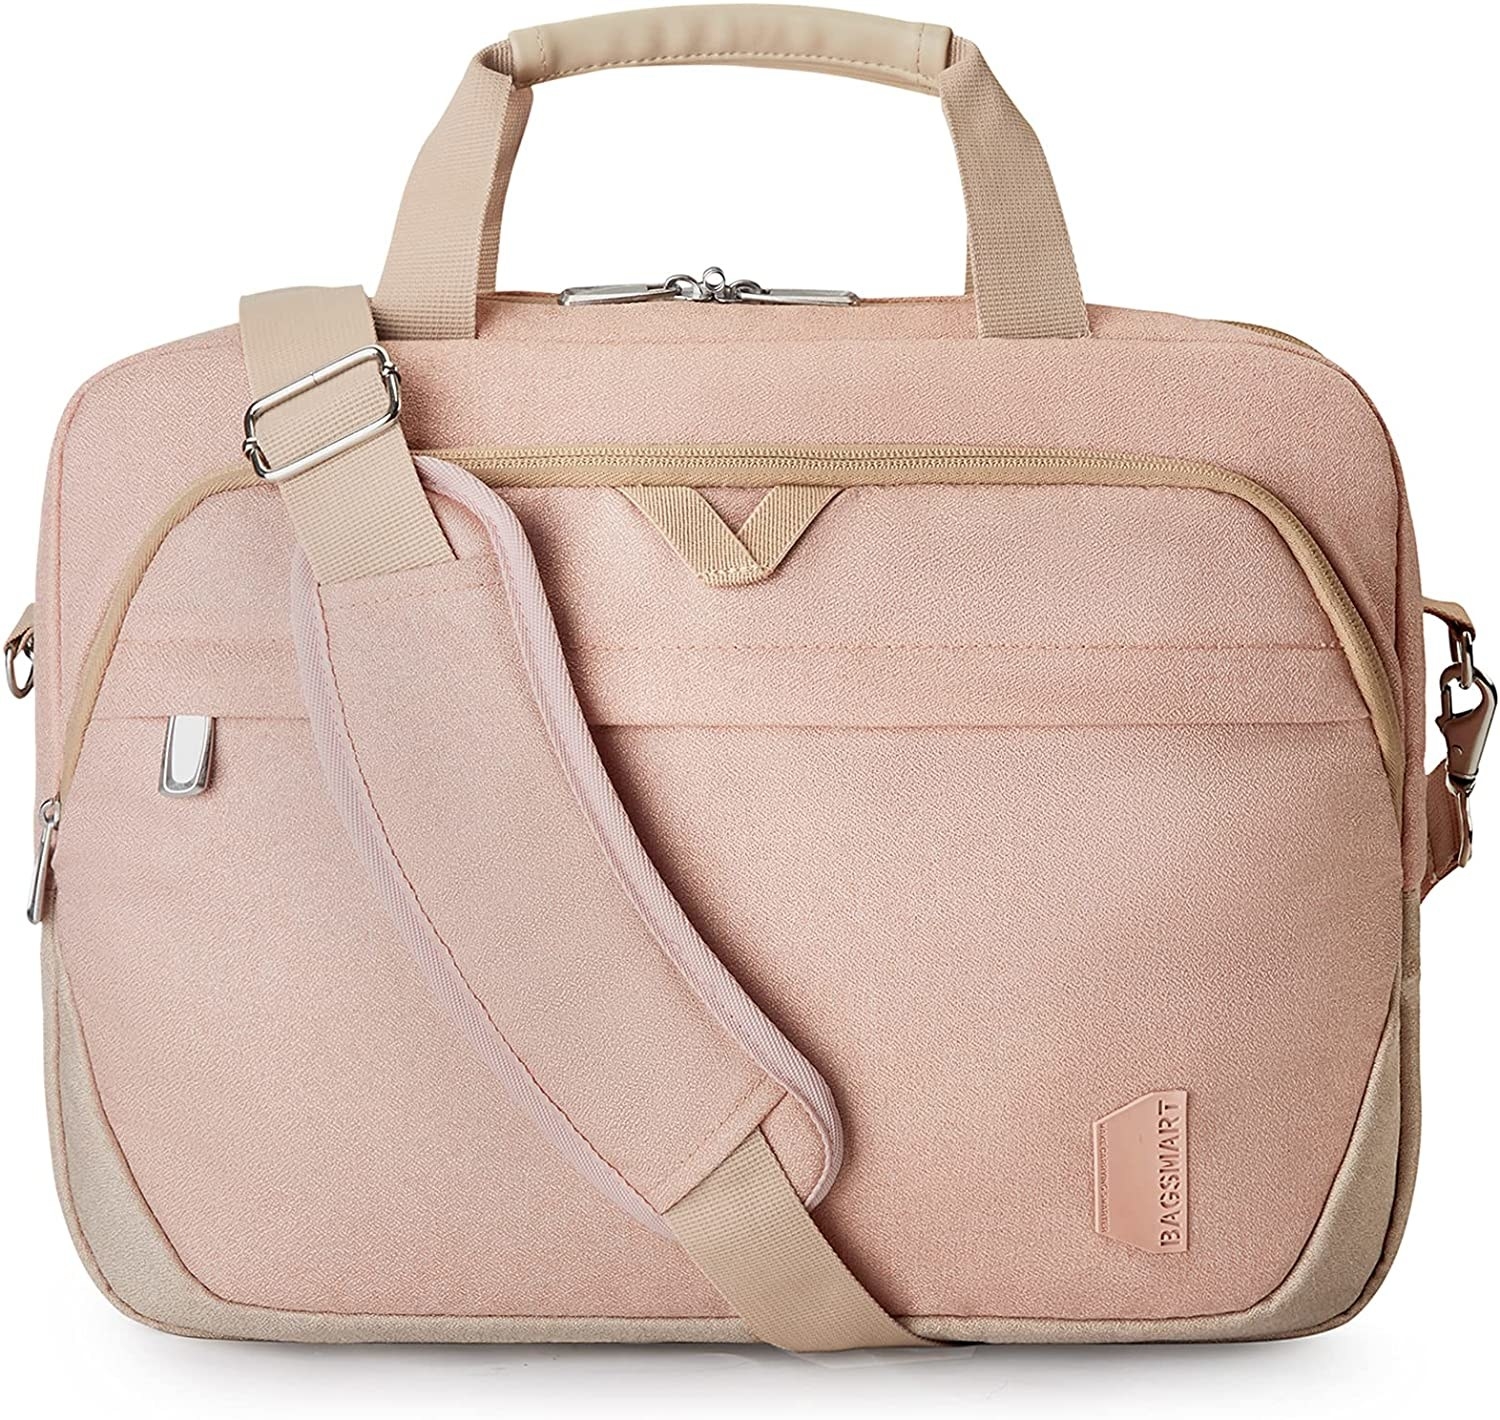 a pink laptop bag